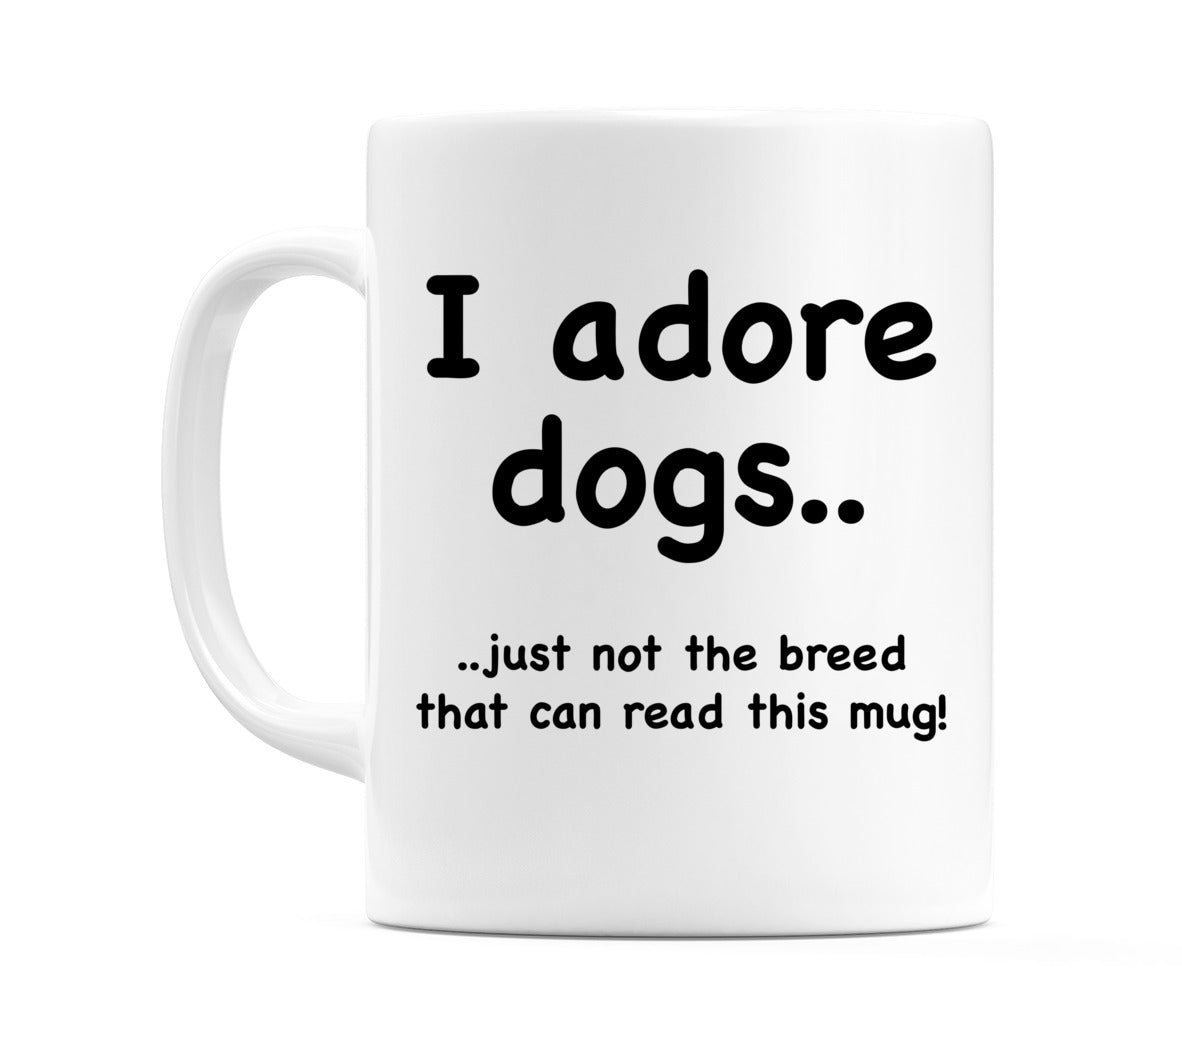 I adore dogs.. Mug